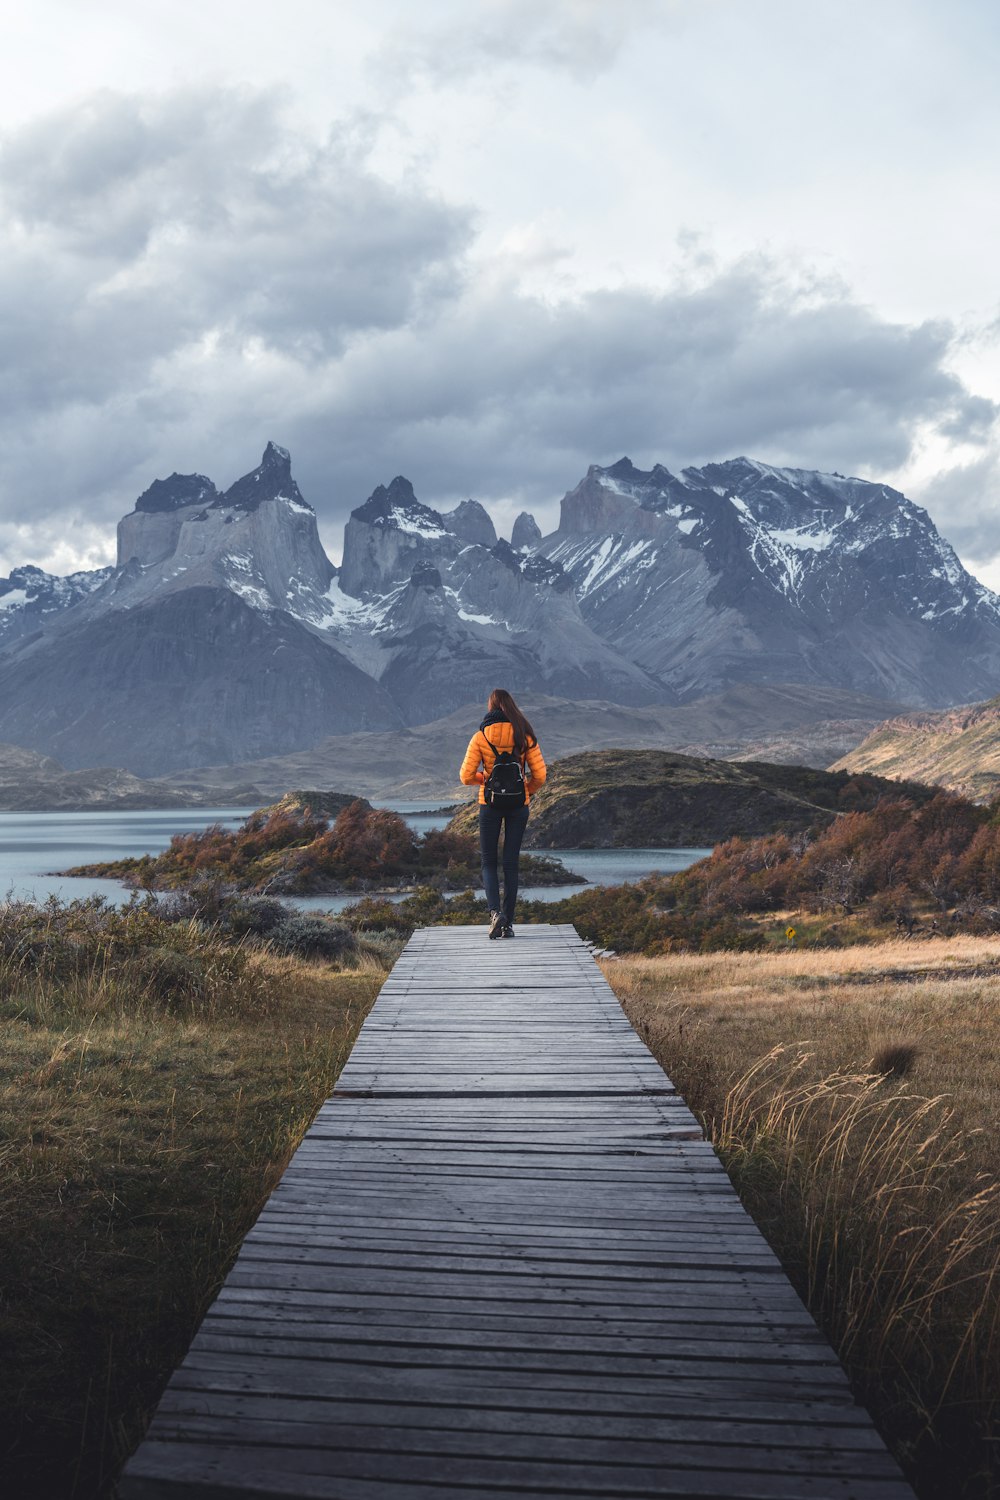 Una persona che cammina lungo una passerella di legno verso le montagne